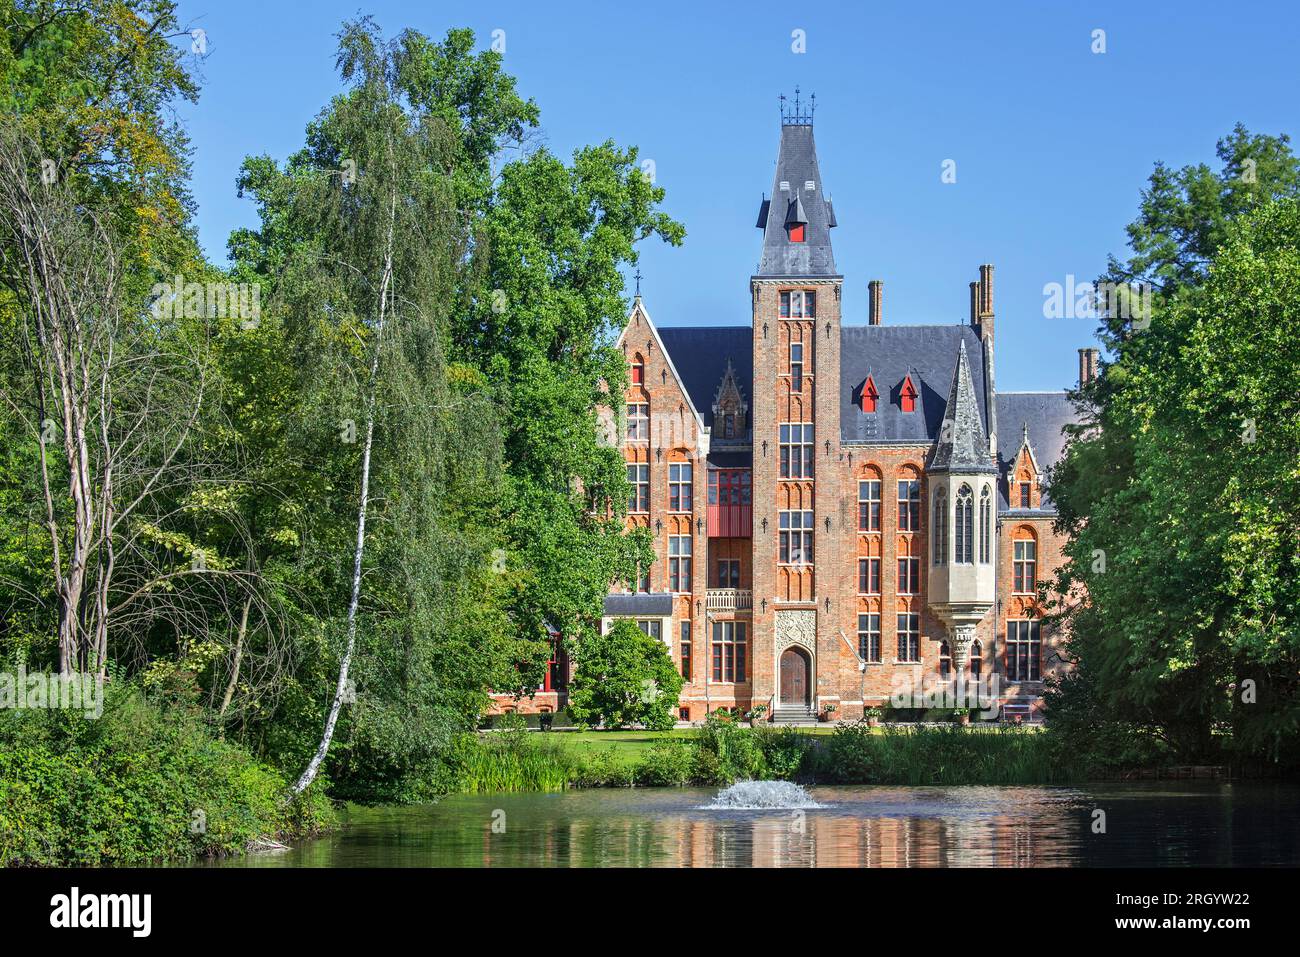 Castello di Loppem / Kasteel van Loppem in estate, rievocazione gotica del XIX secolo / residenza neogotica a Zedelgem vicino a Bruges nelle Fiandre occidentali, Belgio Foto Stock